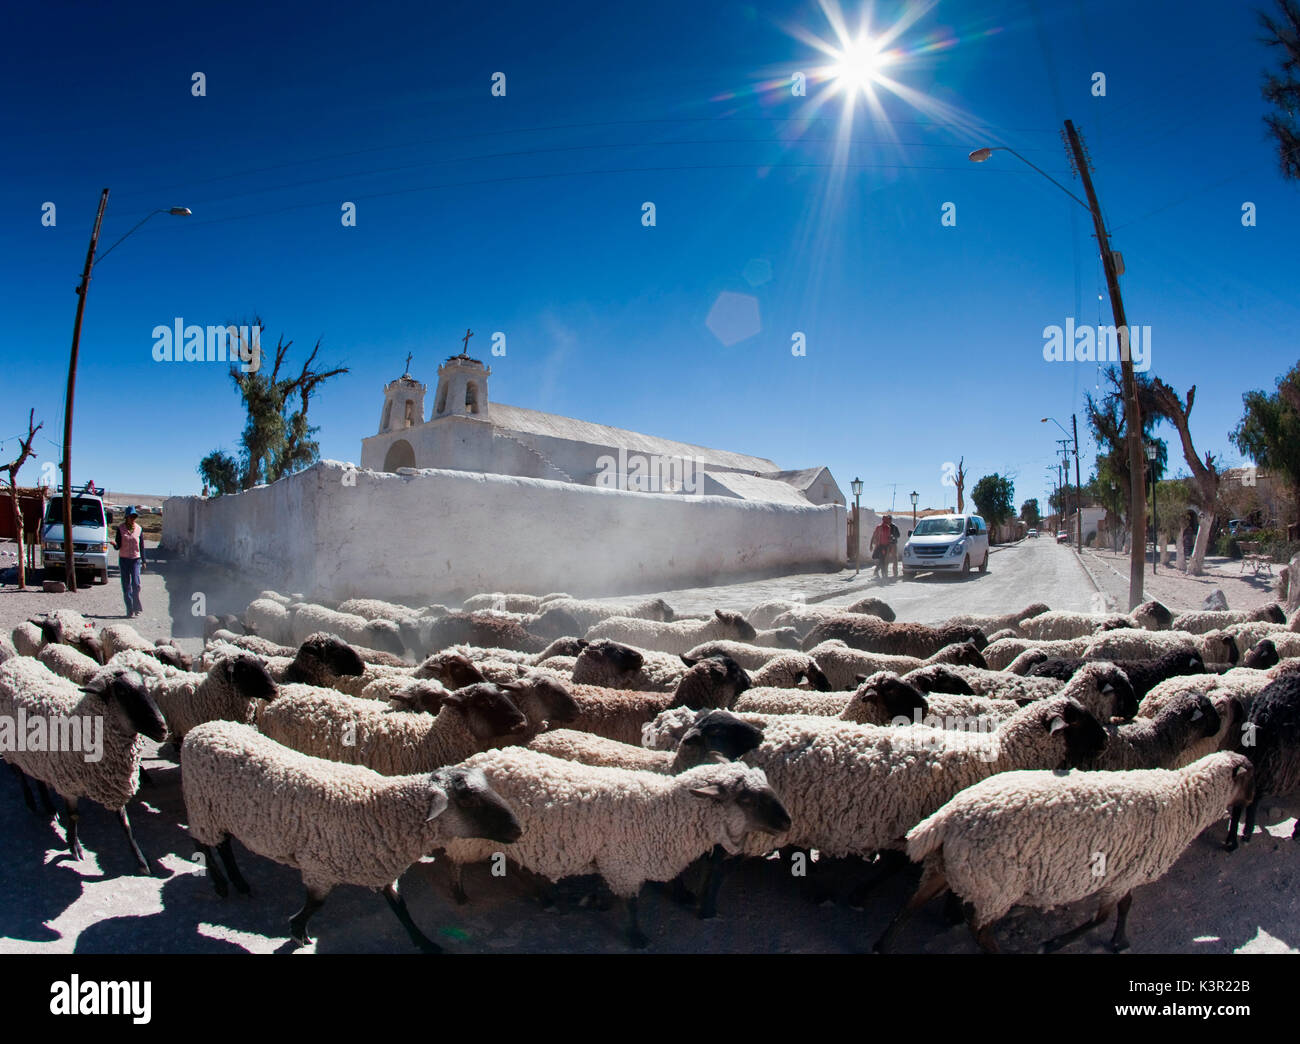 Eine Herde Schafe Kreuzung der Hauptstraße von Chiu Chiu eine Stadt in Chile, das war eine der Stationen auf dem Inka Trail und ist immer noch ein Rastplatz für Reisende in der Wüste. Südamerika Stockfoto